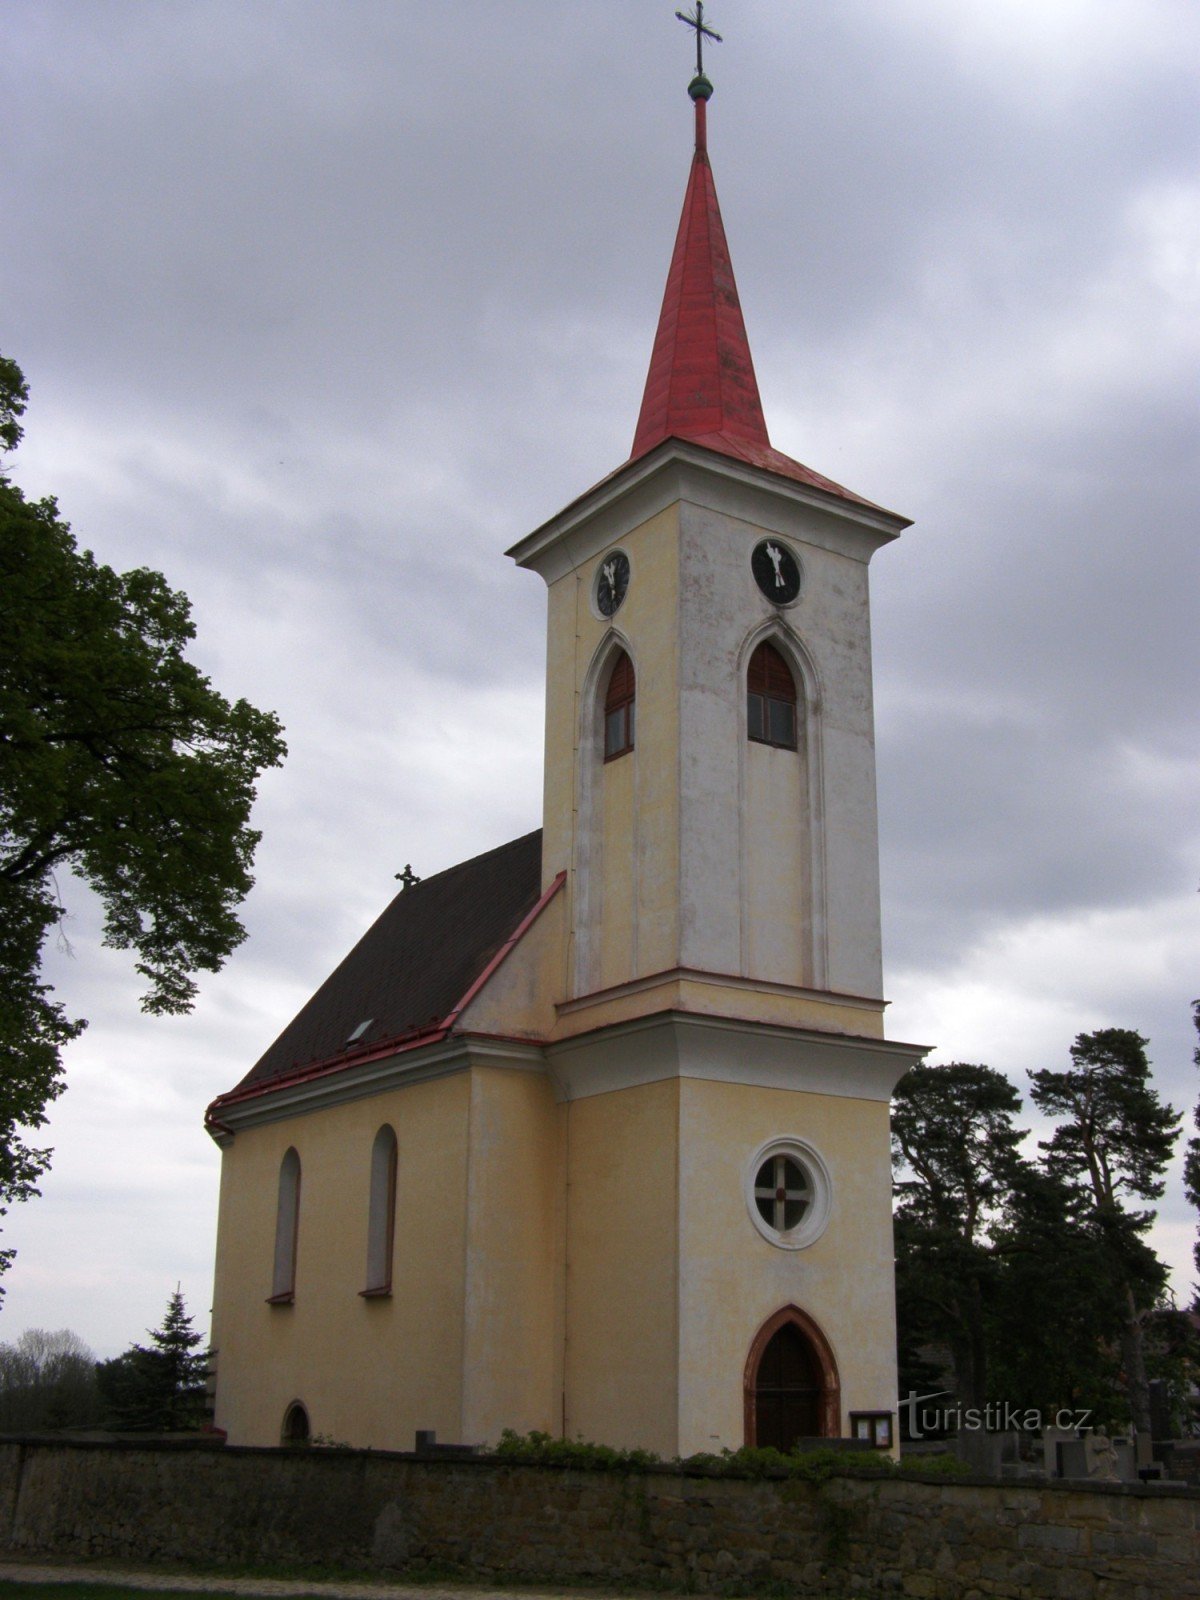 Velichovky - Herran kirkastumisen kirkko